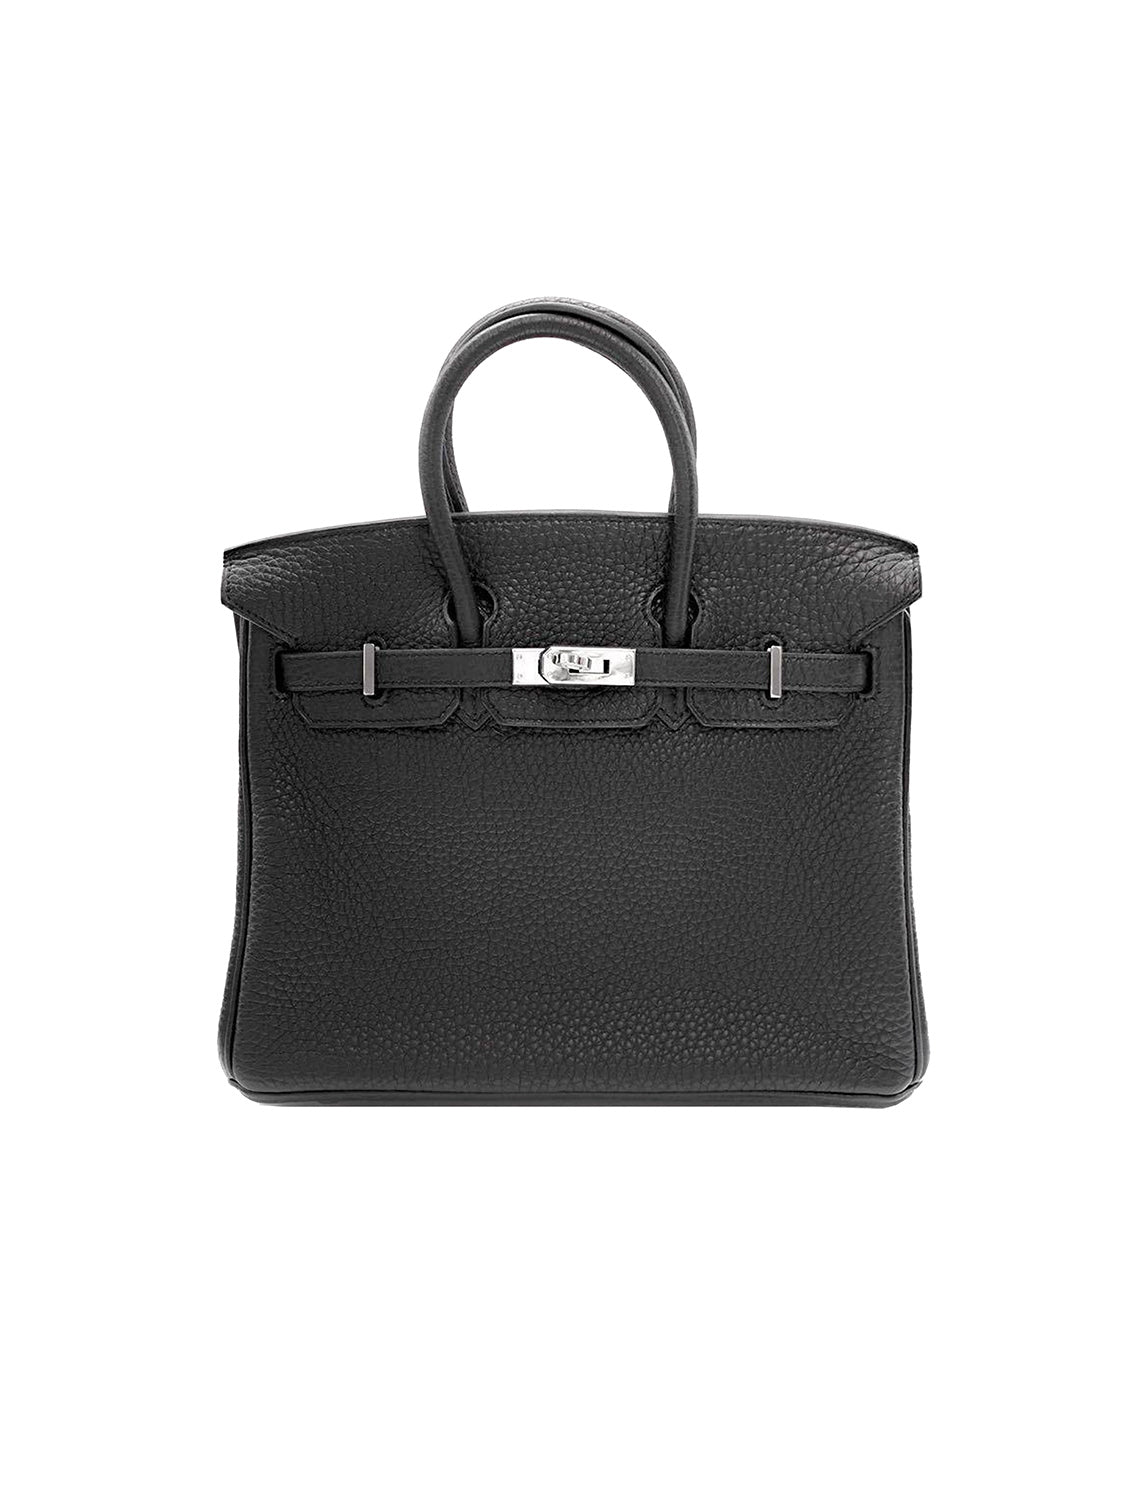 Hermes Birkin bag 25 Black Epsom leather Silver hardware